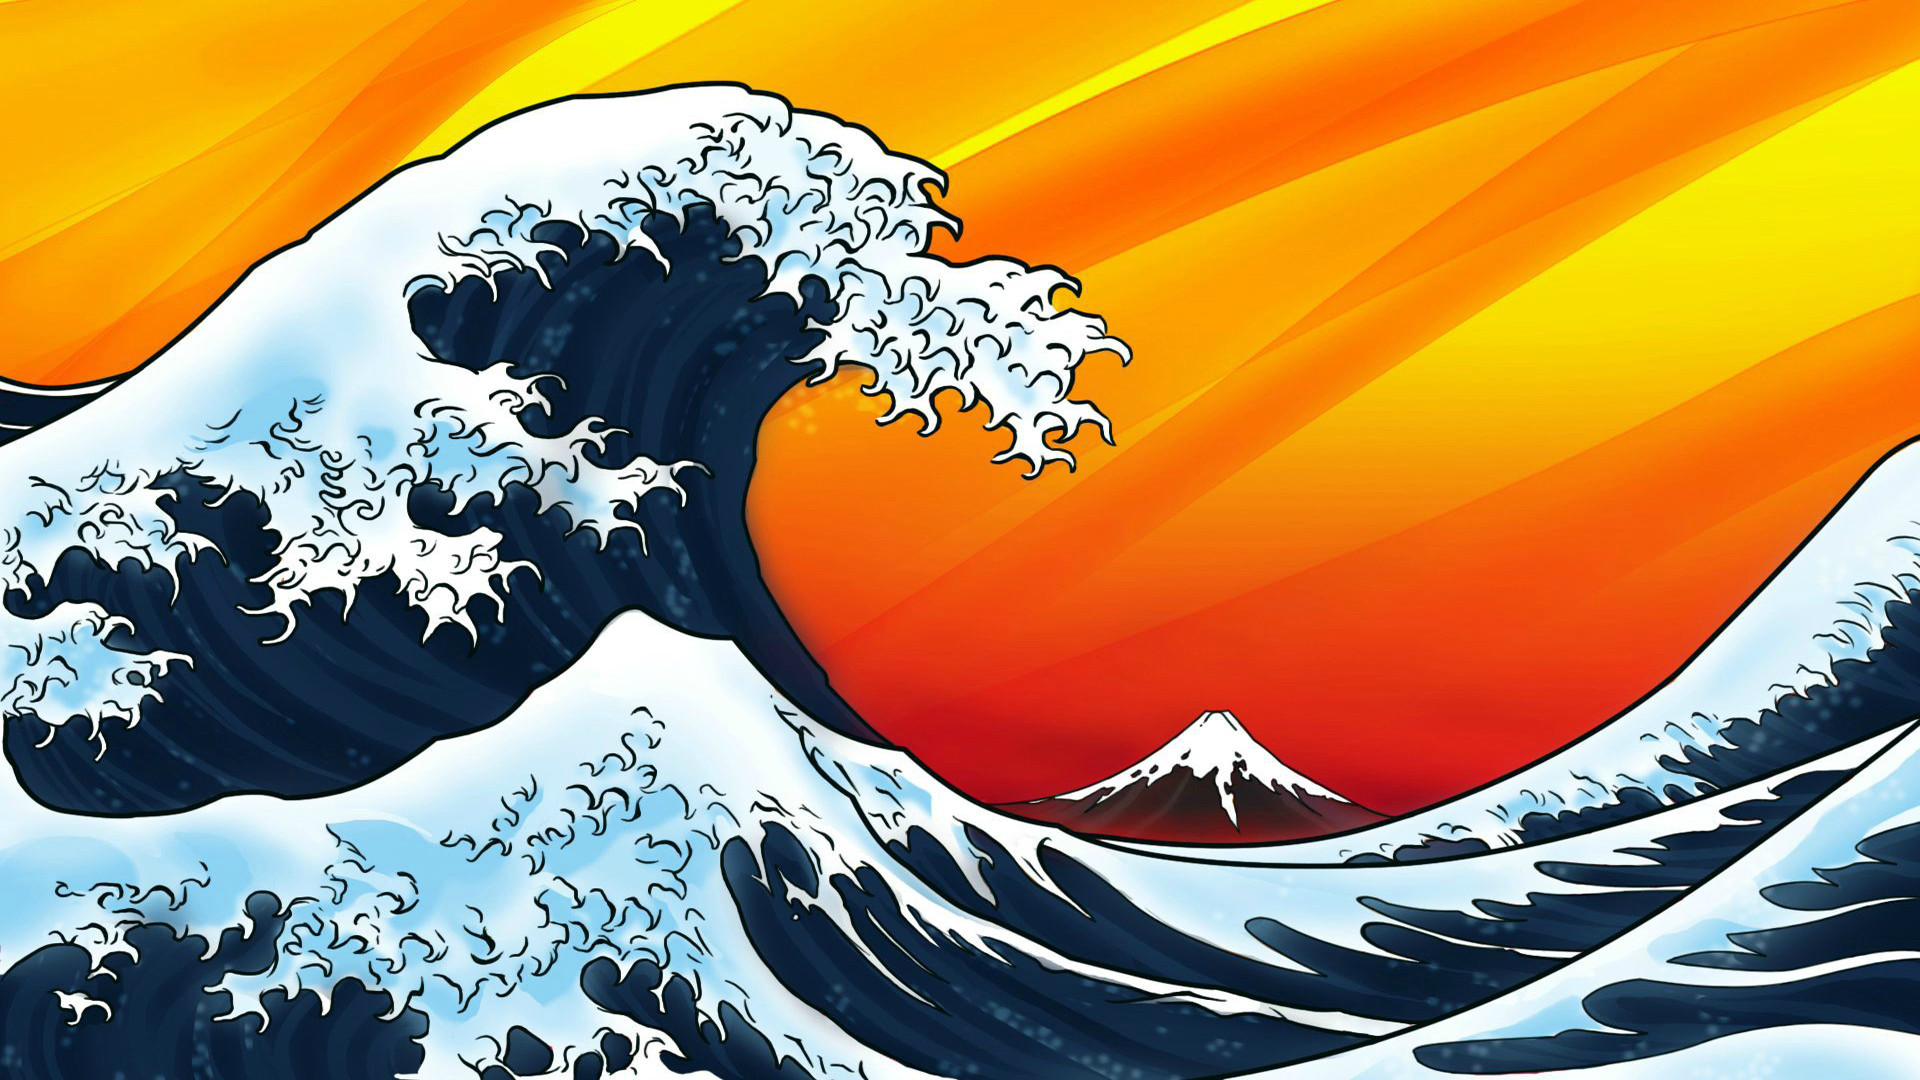 The Great Wave off Kanagawa 4k Ultra HD